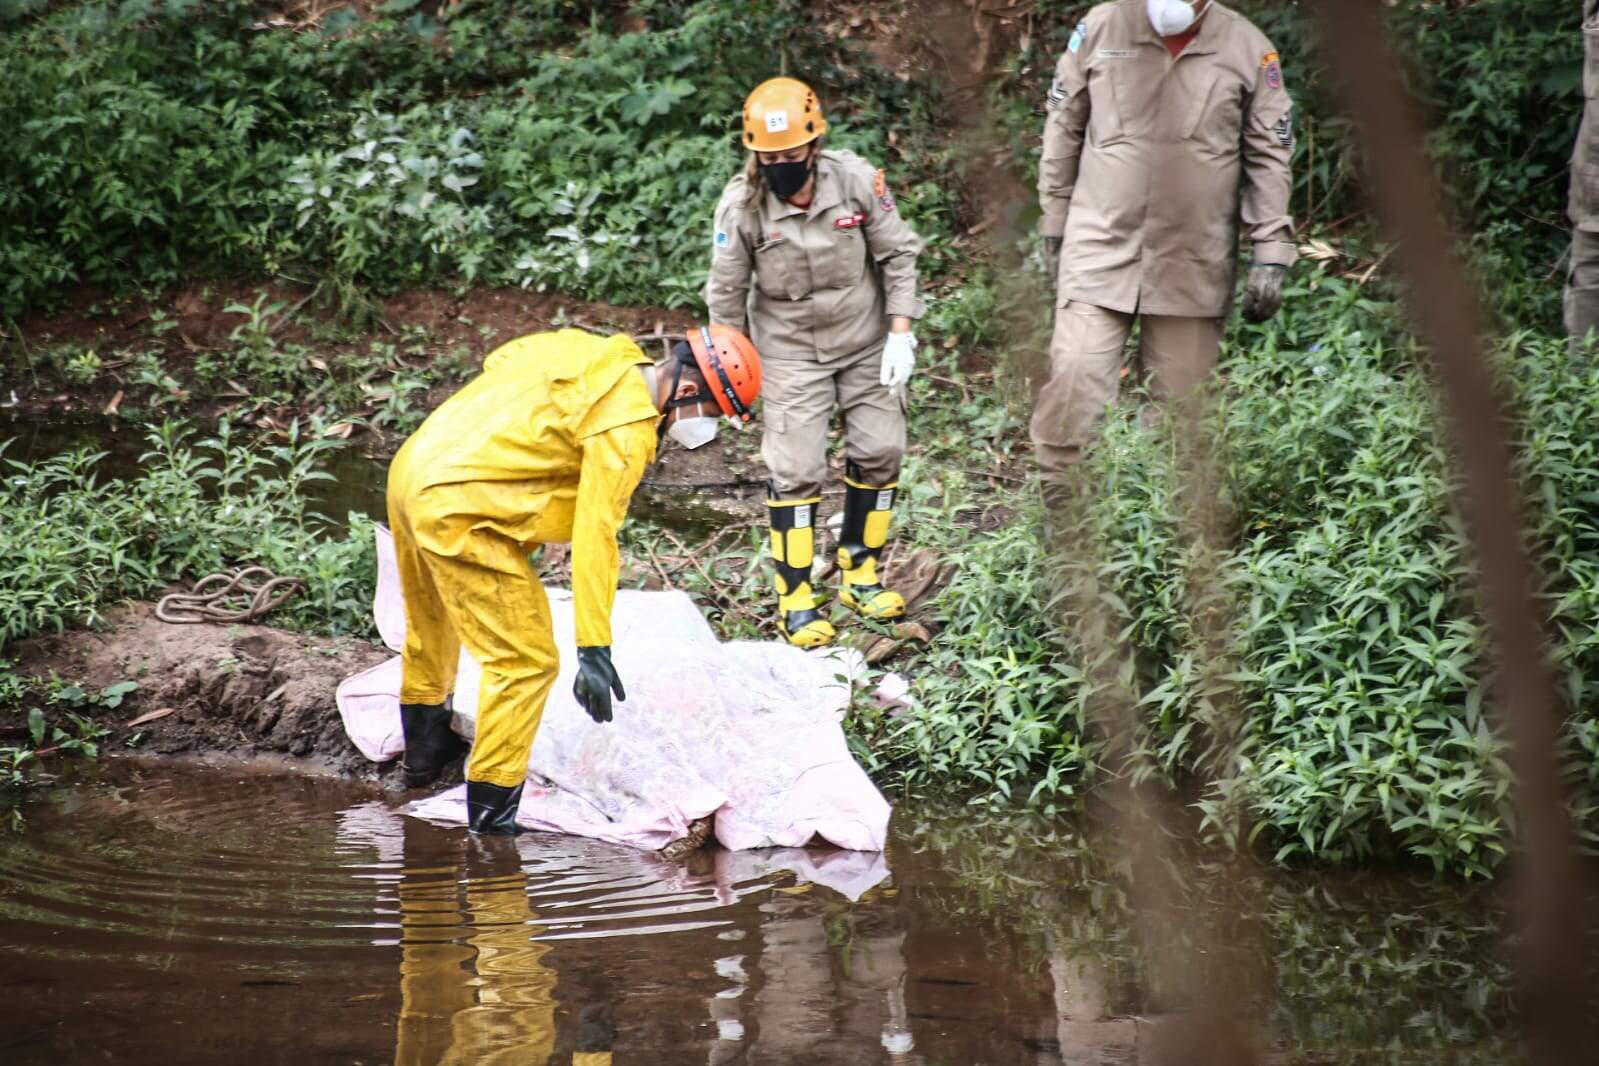 corpo3 GALcDN1 - Família acredita que corpo achado em córrego é de pastor que sumiu em Campo Grande